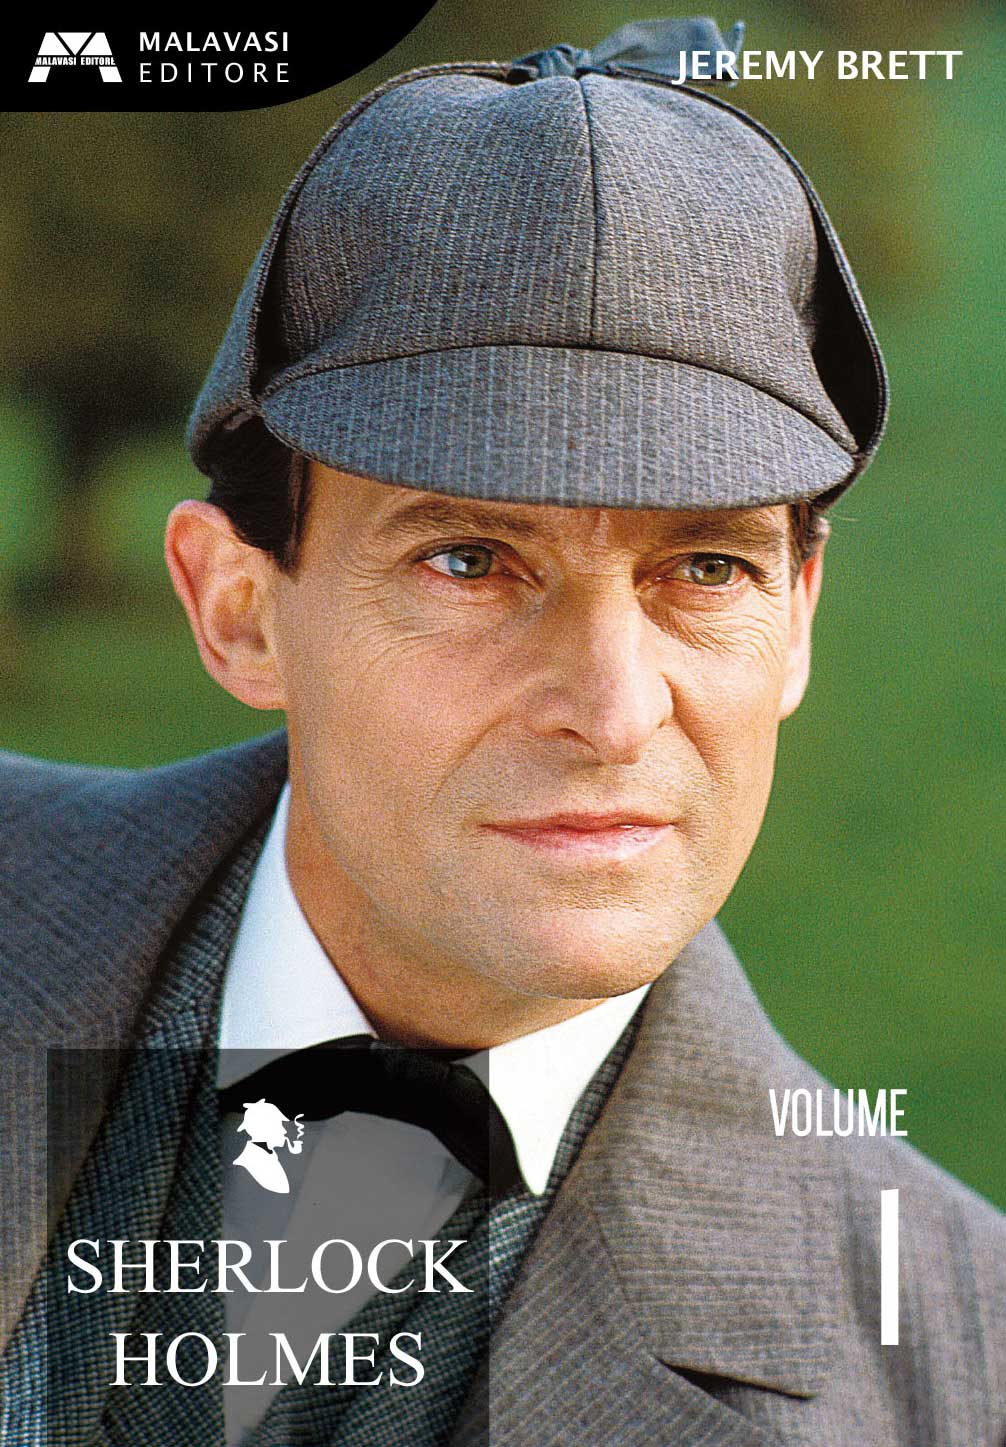 Dvd Sherlock Holmes Vol 01 (2 Dvd) NUOVO SIGILLATO, EDIZIONE DEL 18/09/2019 SUBITO DISPONIBILE